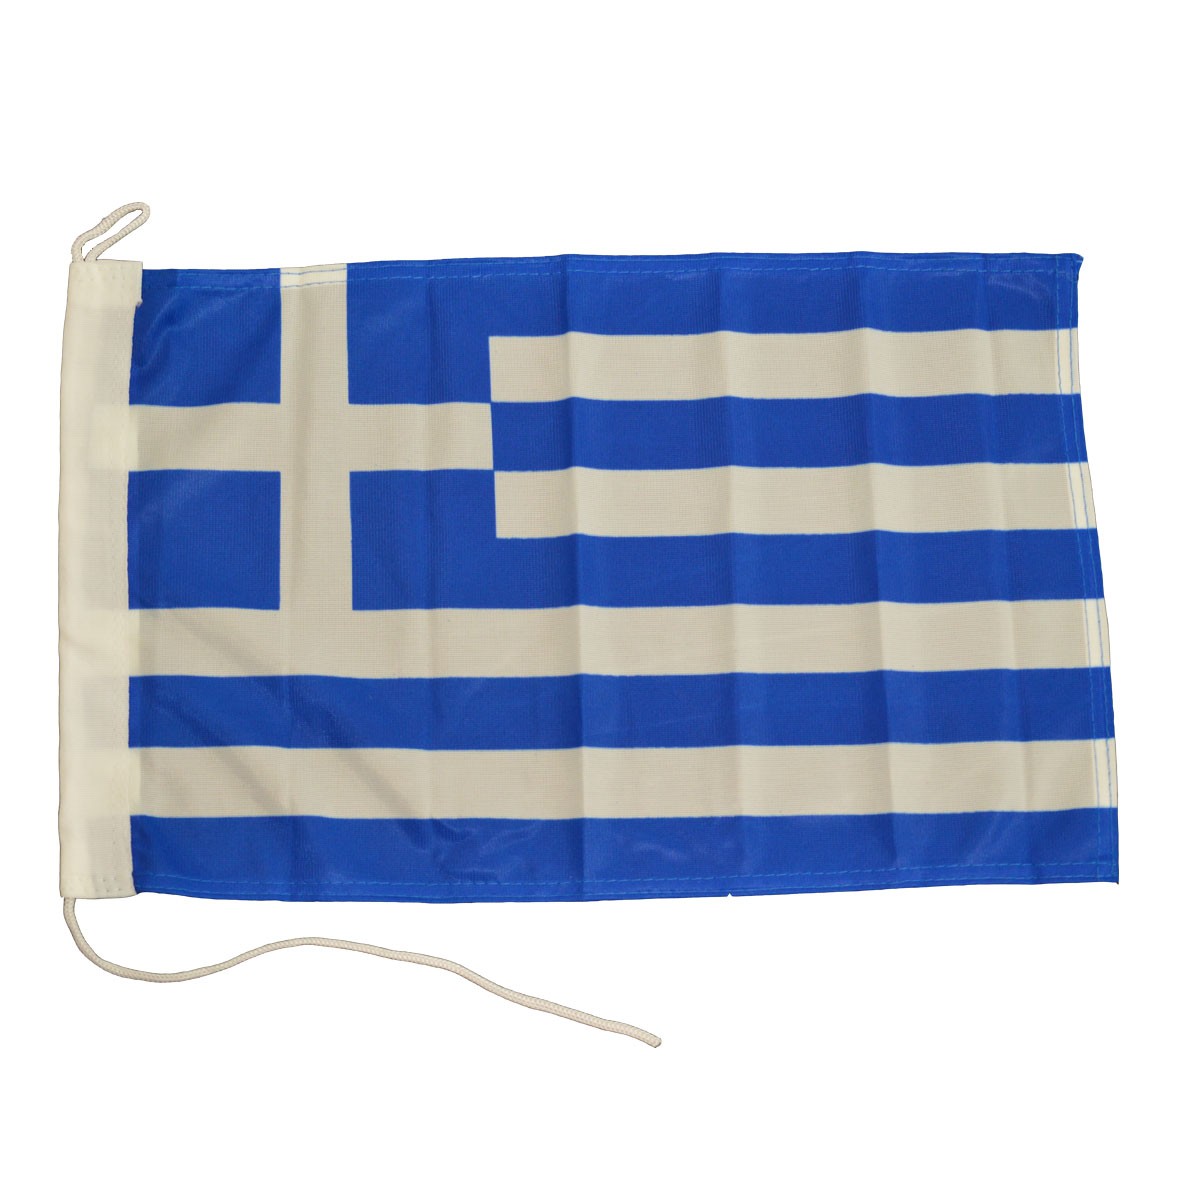 41.76 - Ελληνική Ορθογώνια Σημαία Μήκους 200cm